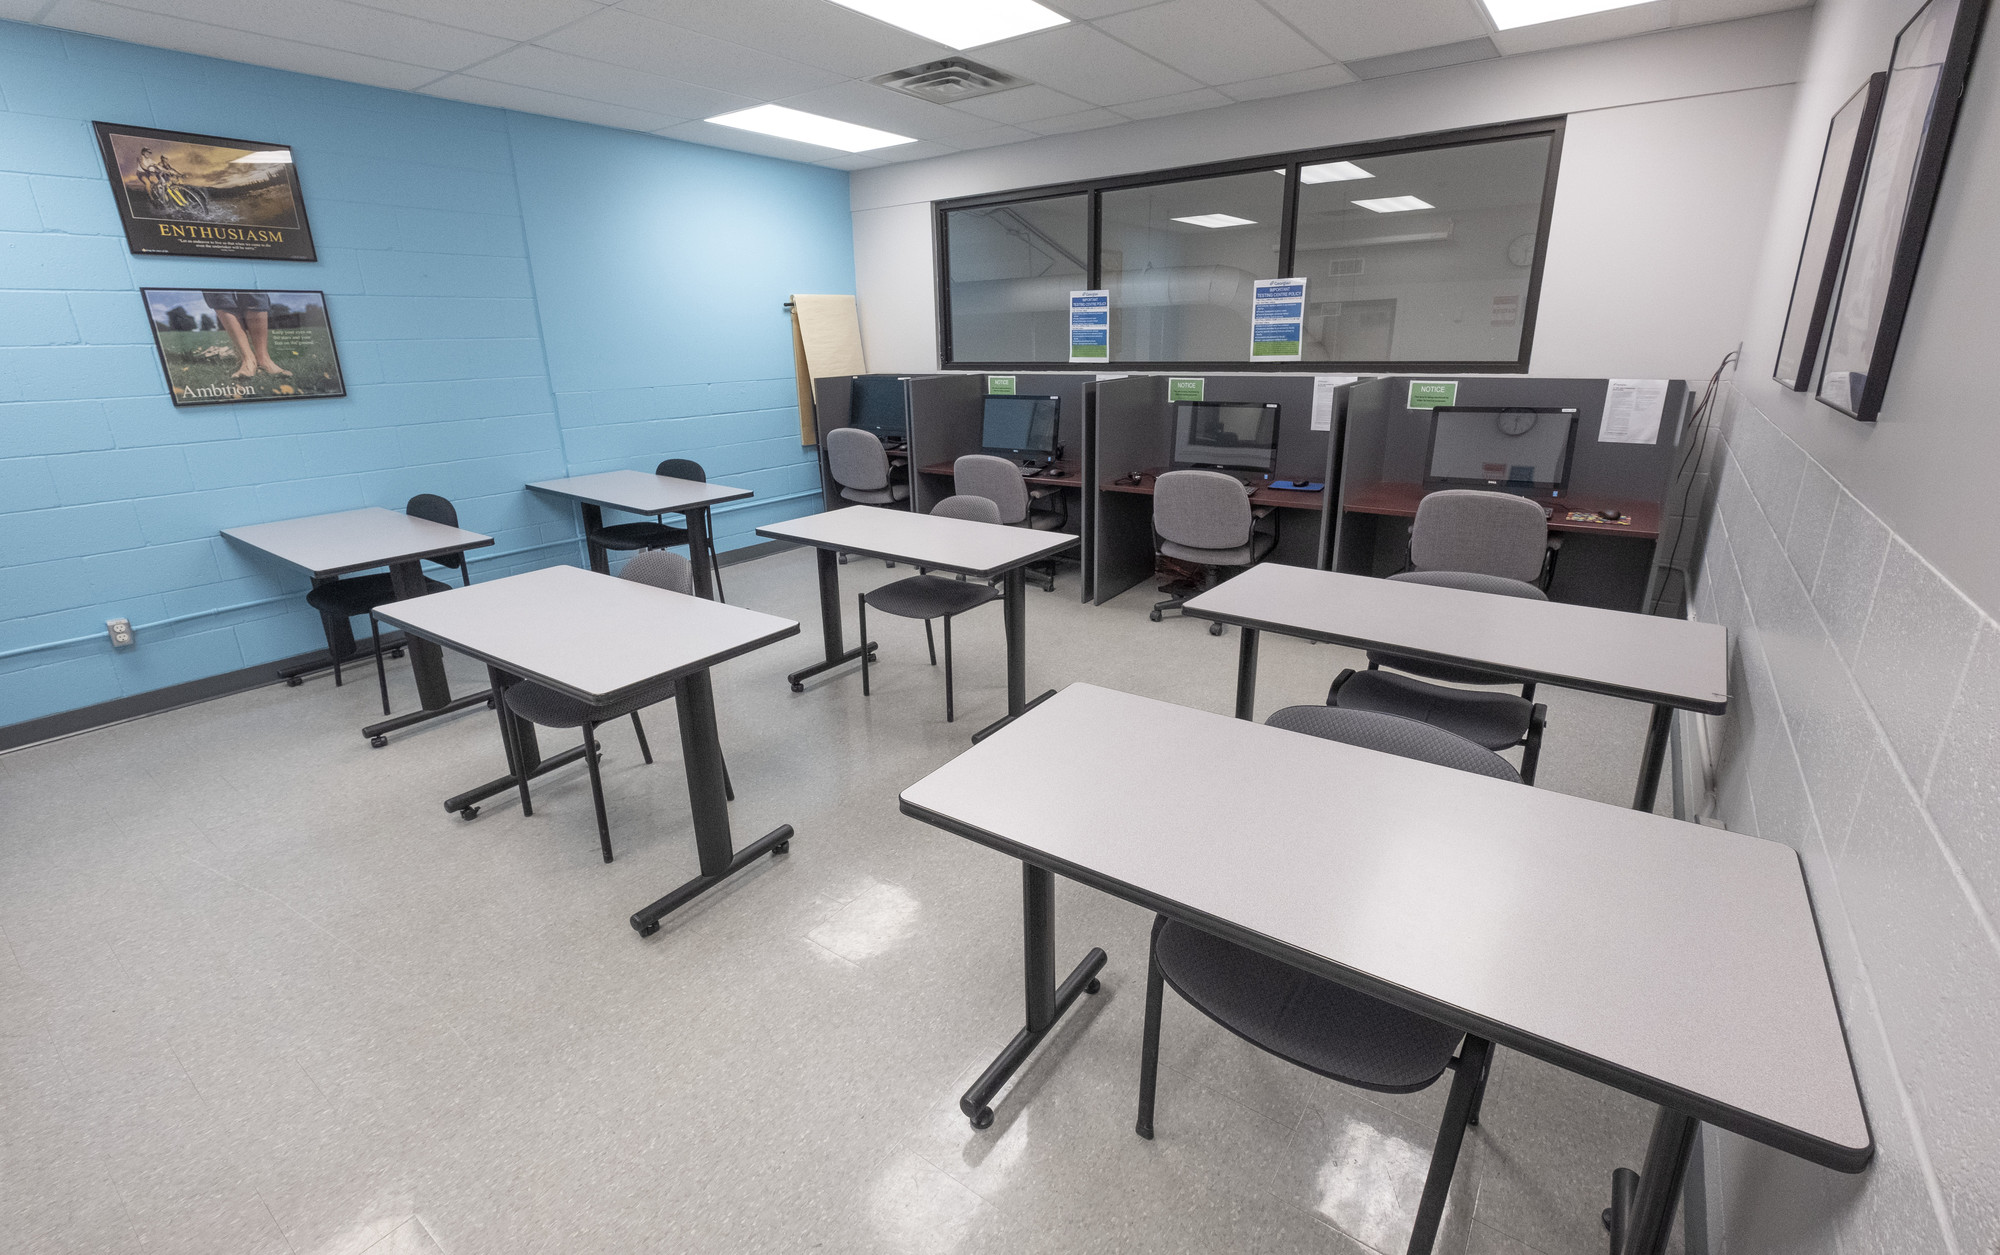 Classroom at the Orangeville Campus